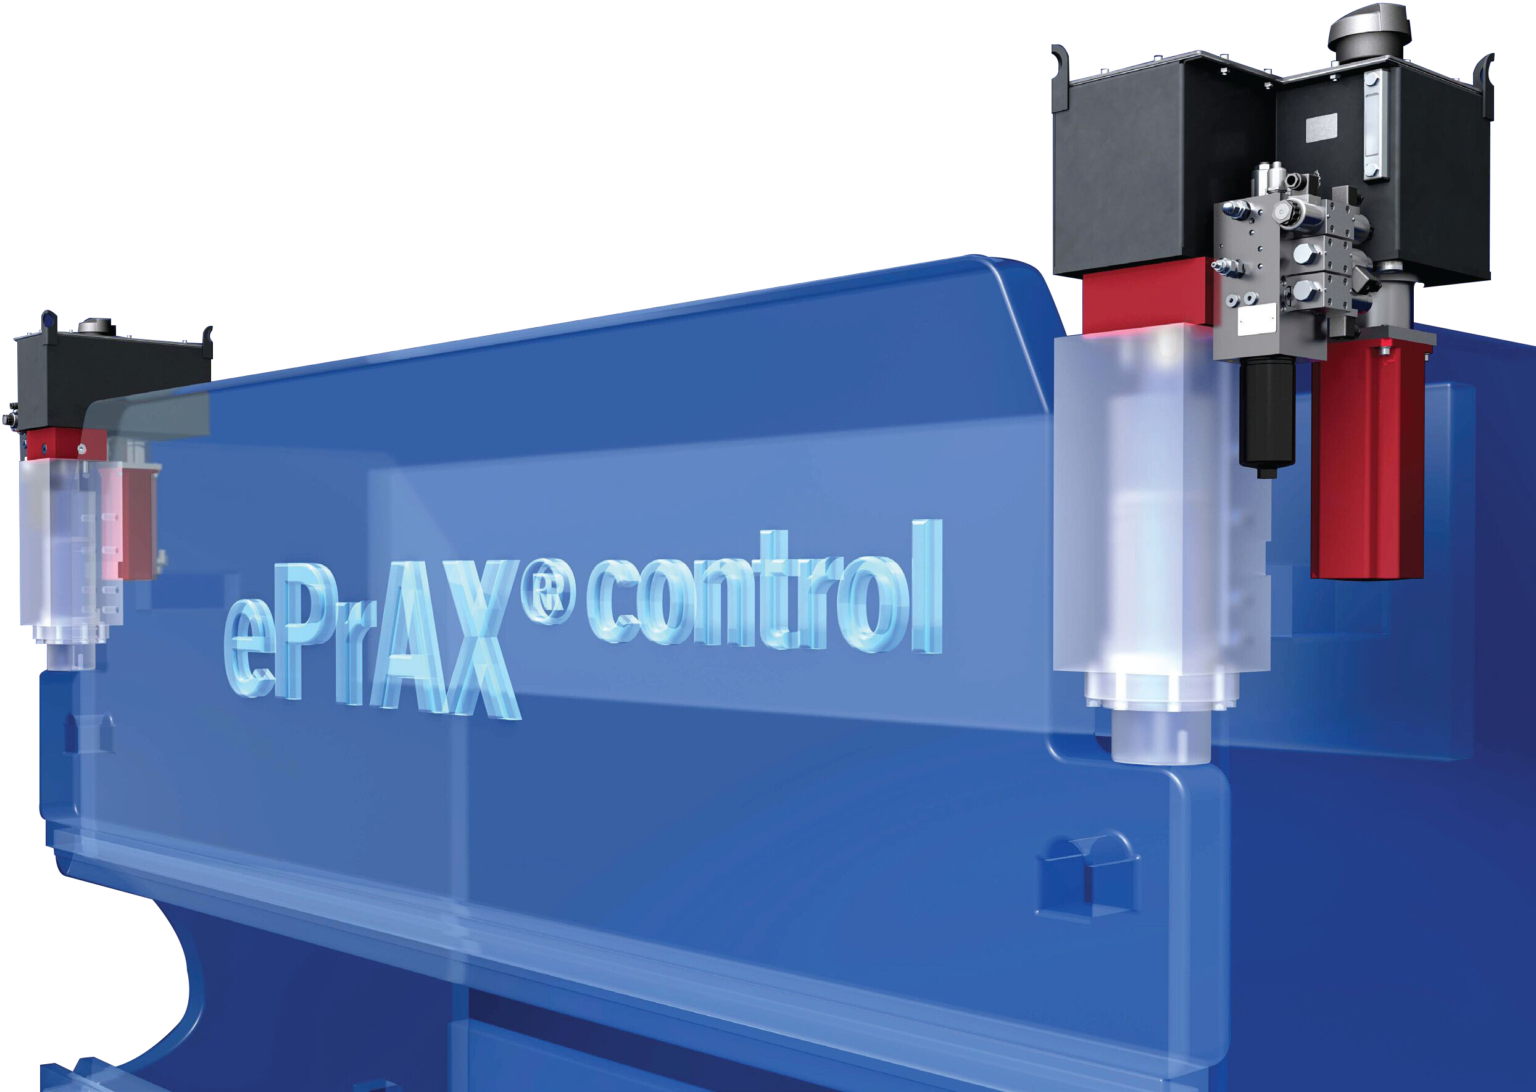 ePrAX® Hybrid Servo System